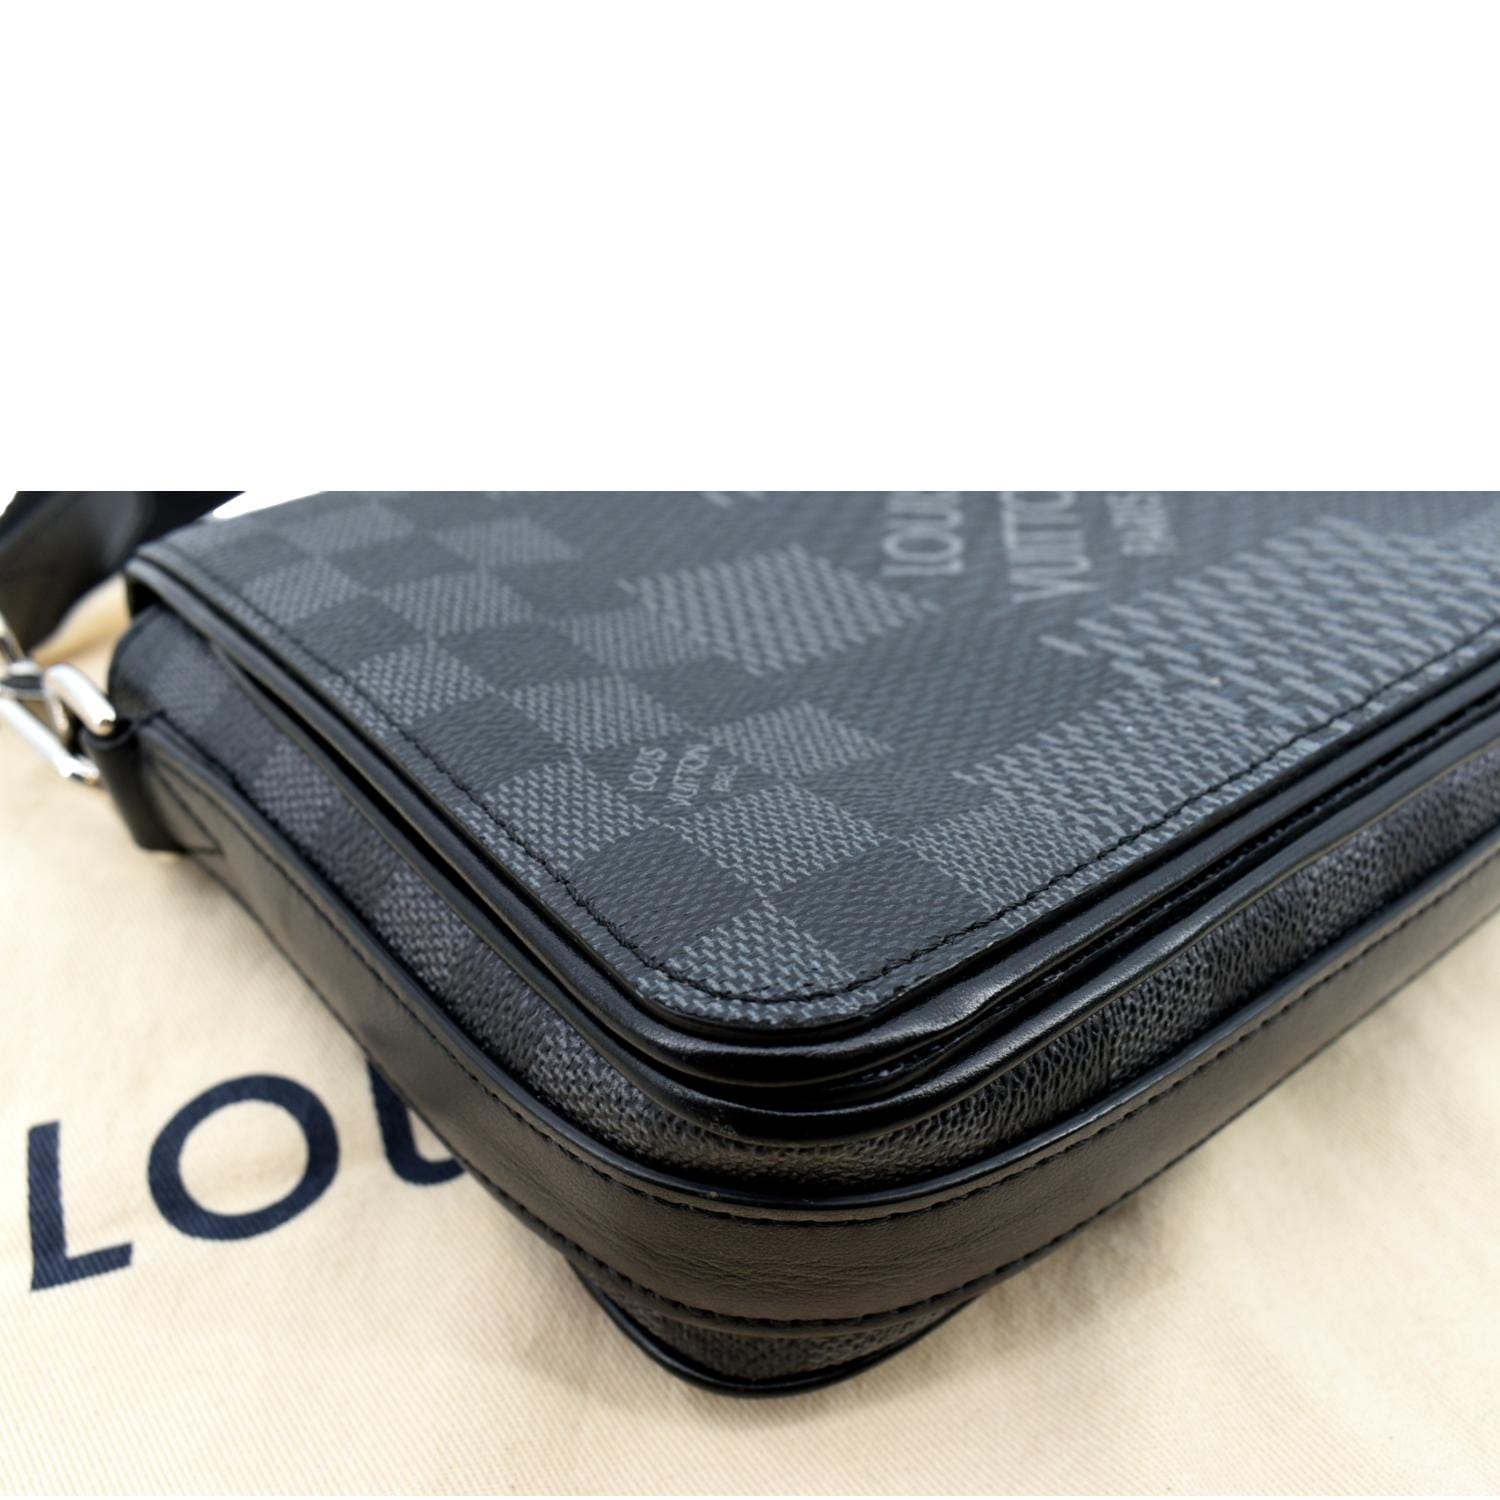 Louis Vuitton Studio Messenger Bag Limited Edition Damier Graphite 3D Black  2023921